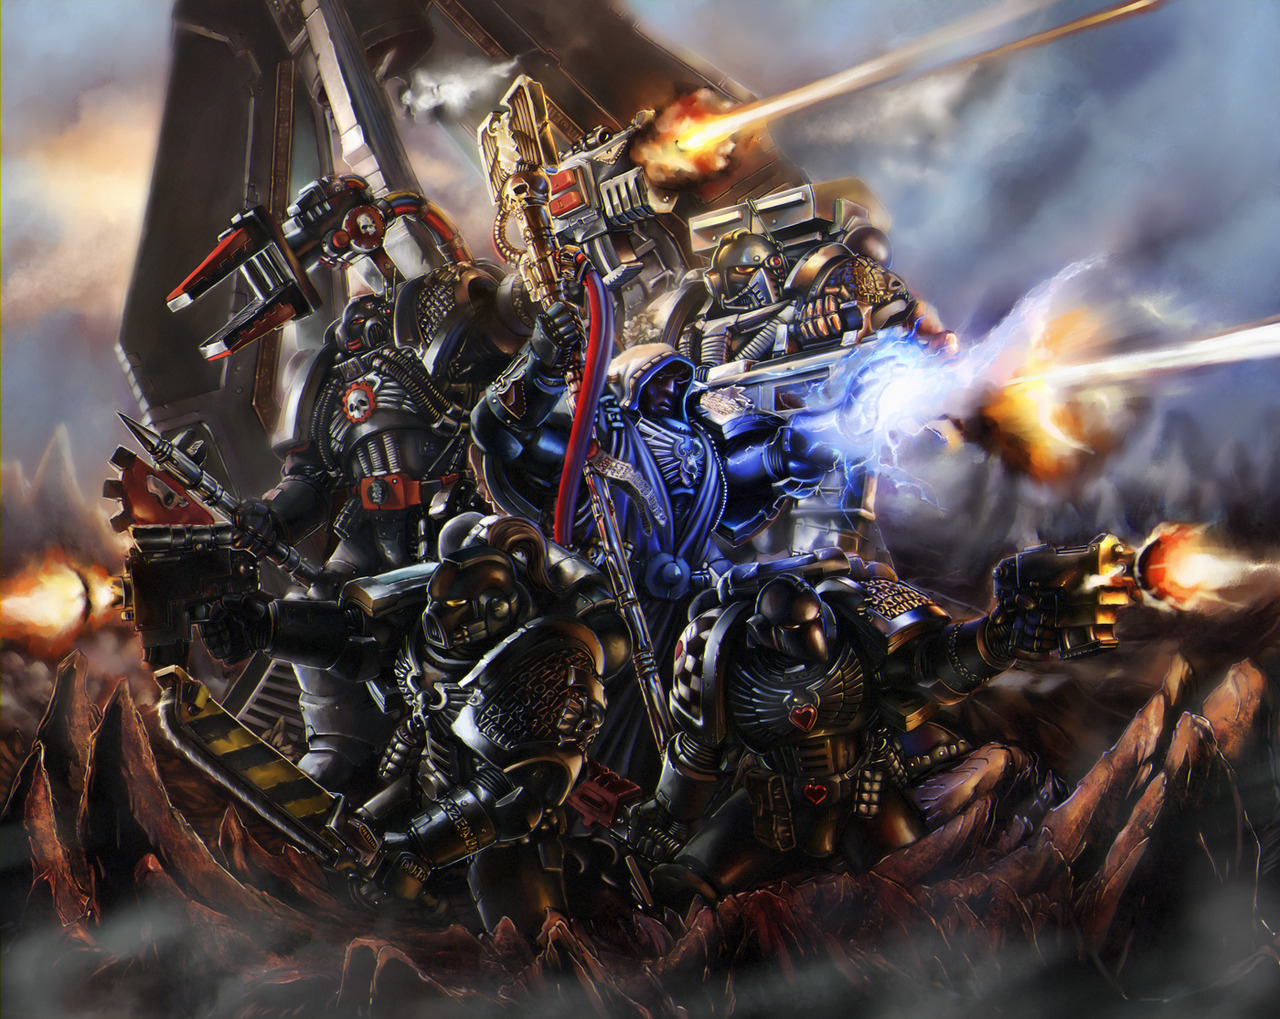 Warhammer 40k artwork — Deathwatch Kill-Team